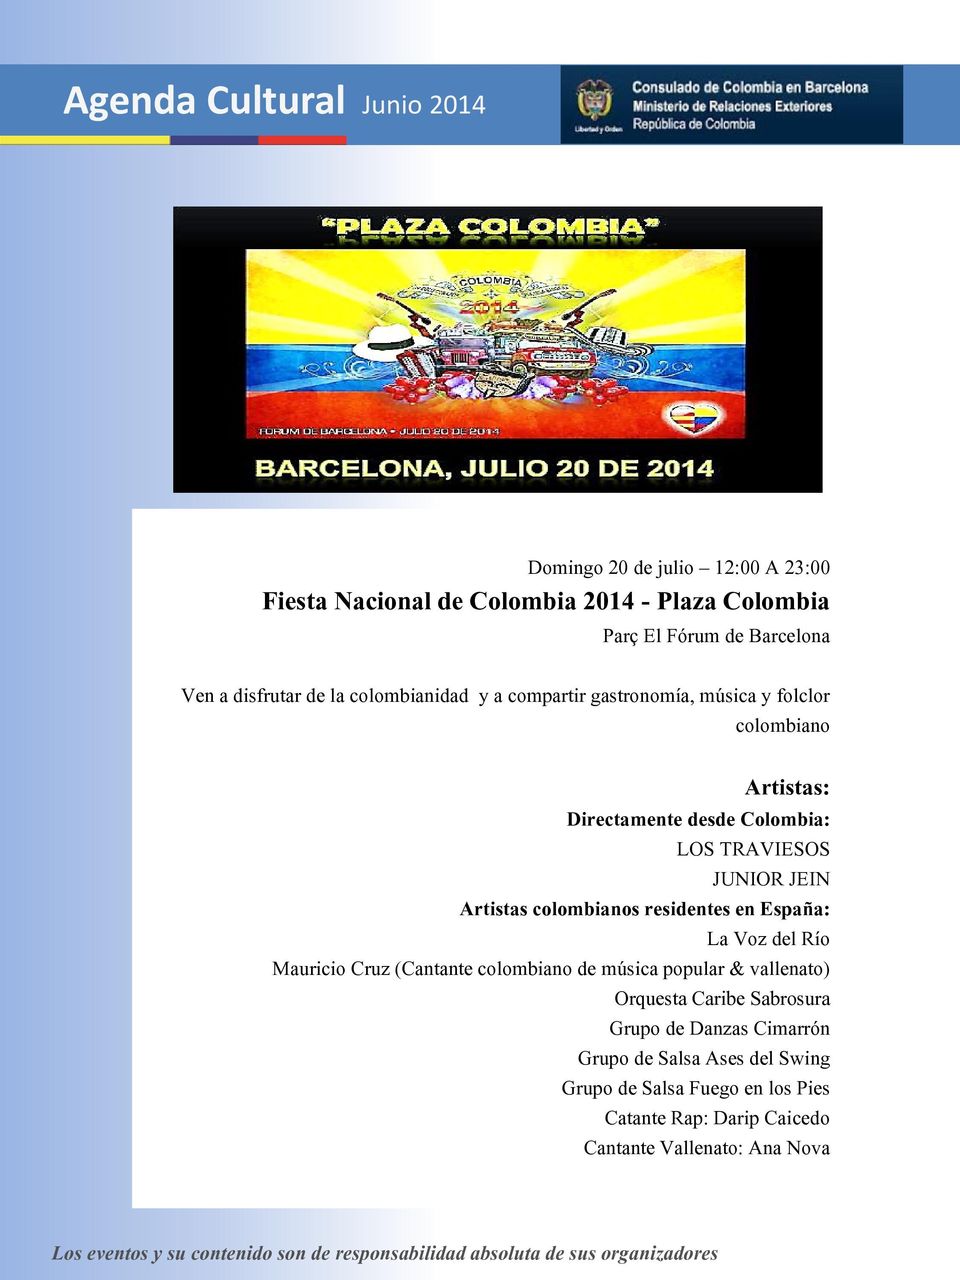 Artistas colombianos residentes en España: La Voz del Río Mauricio Cruz (Cantante colombiano de música popular & vallenato) Orquesta Caribe